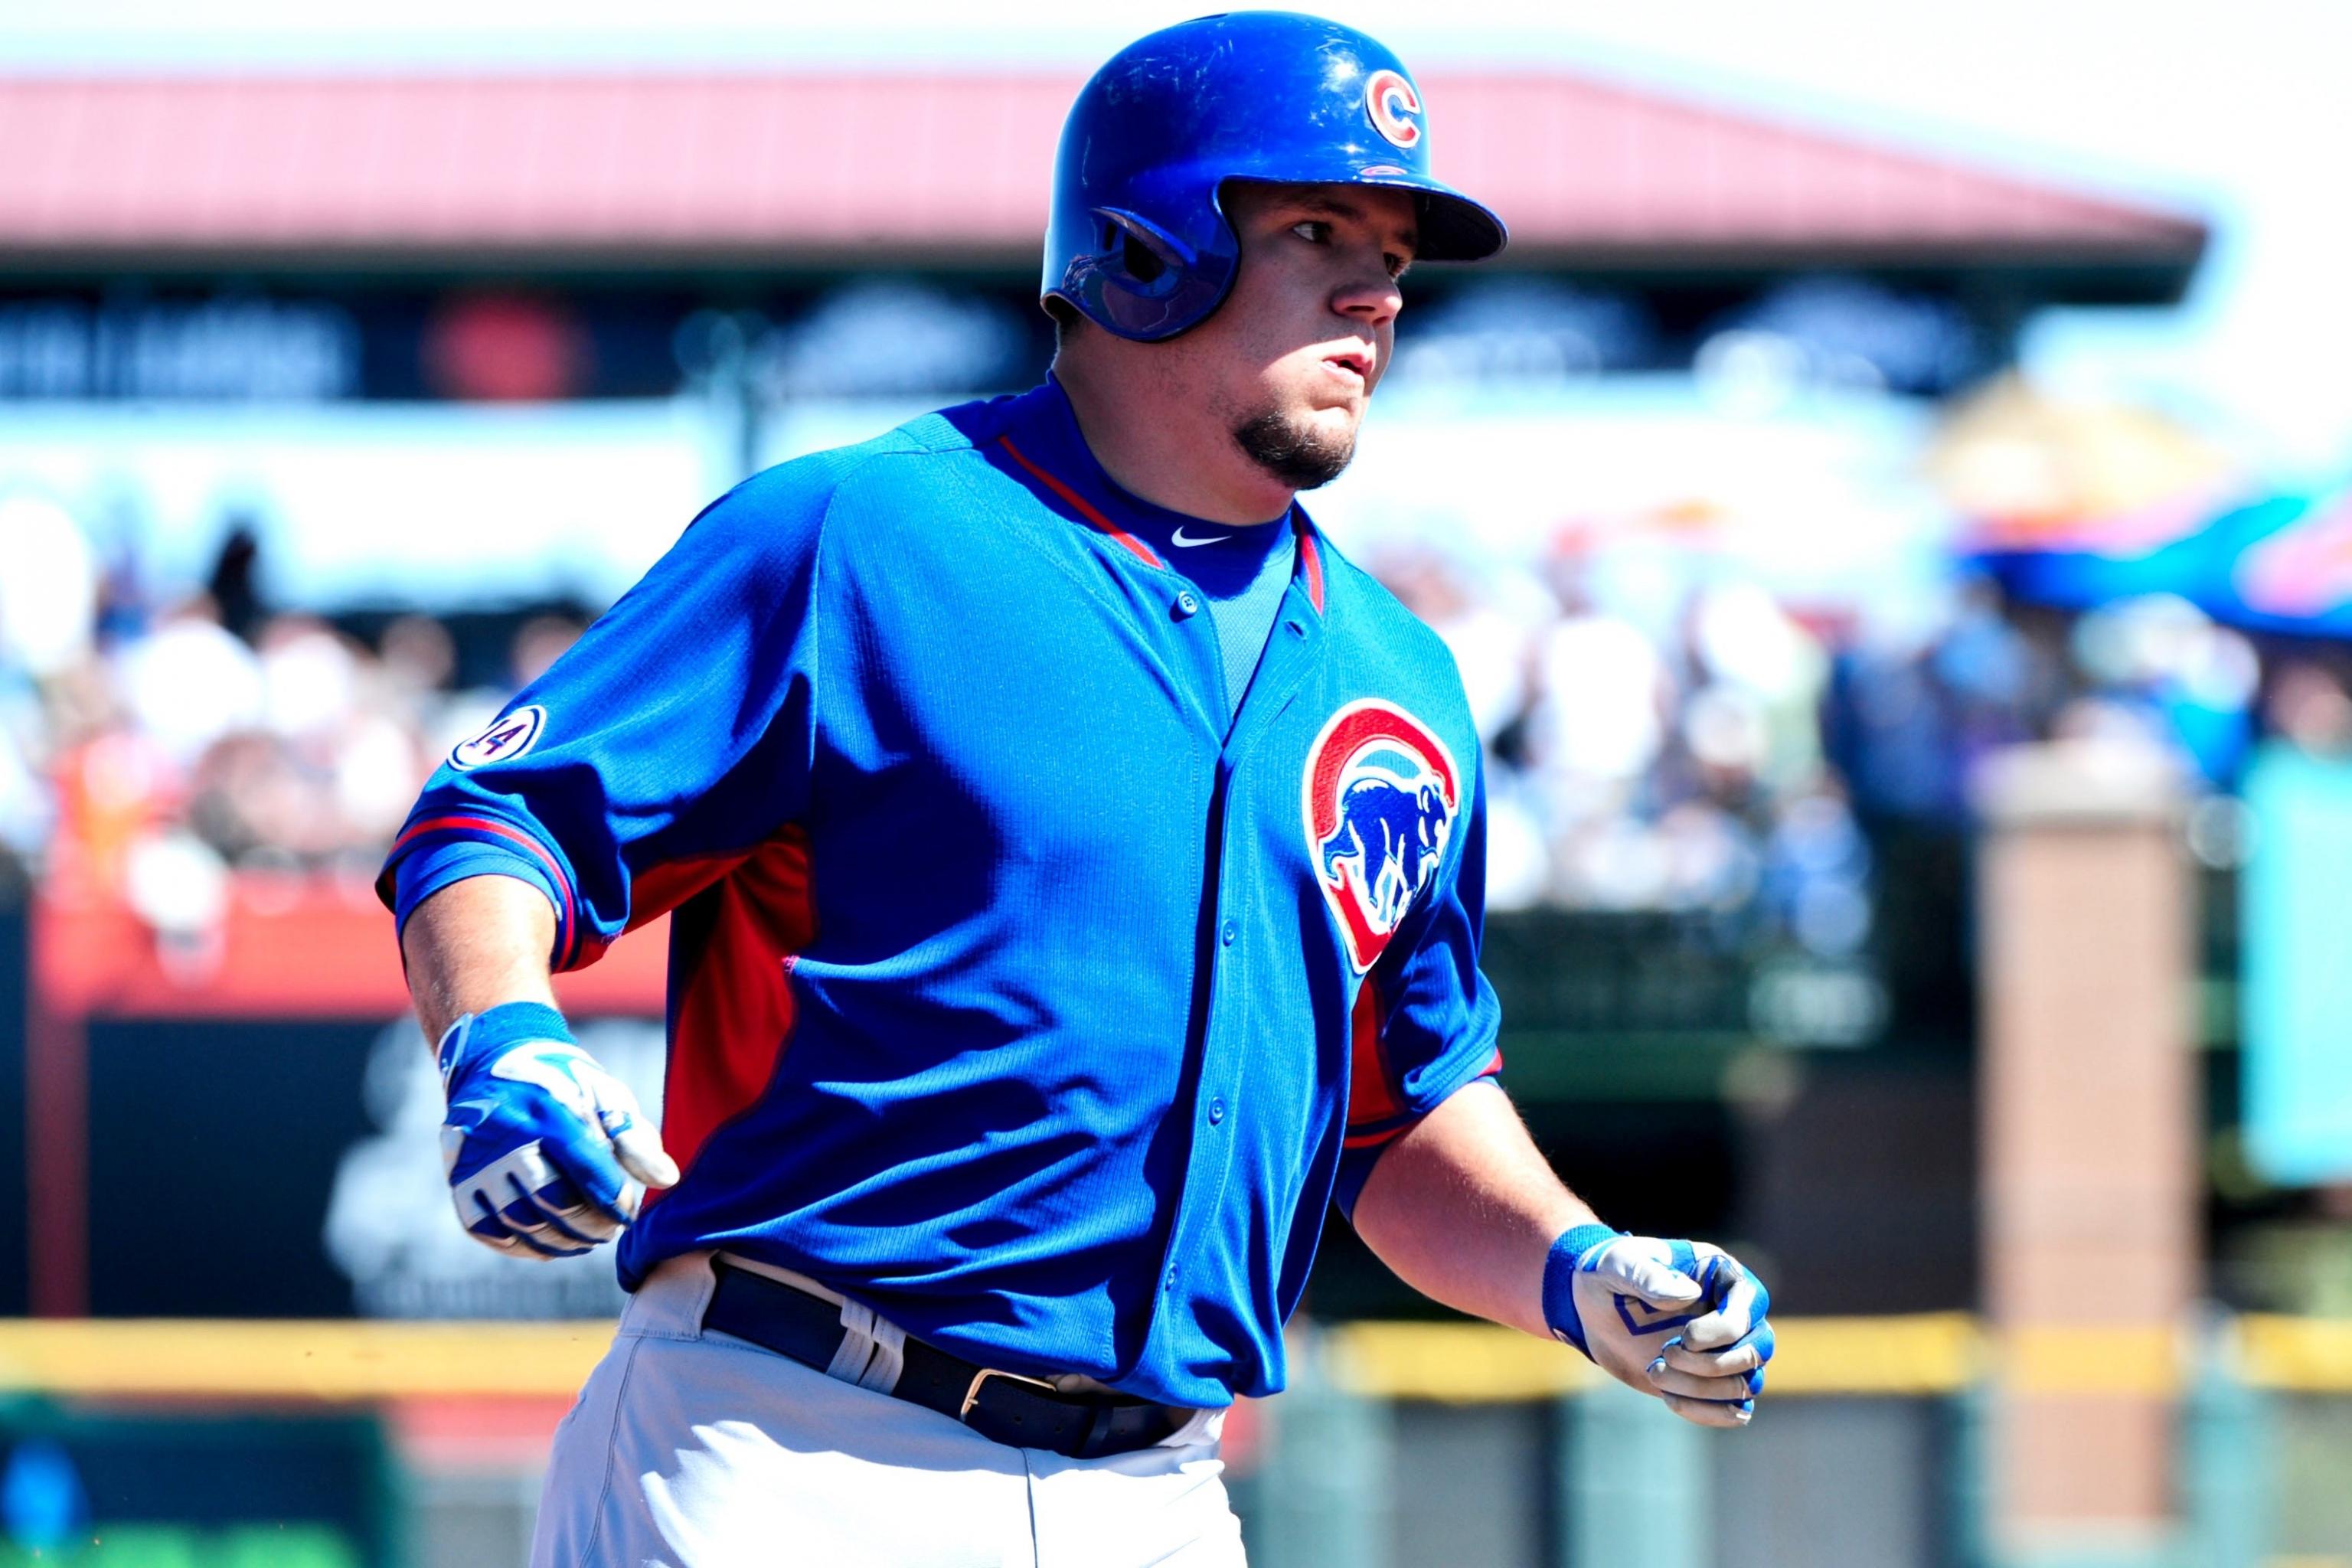 Cubs' Miguel Montero: Kyle Schwarber has big-league catcher